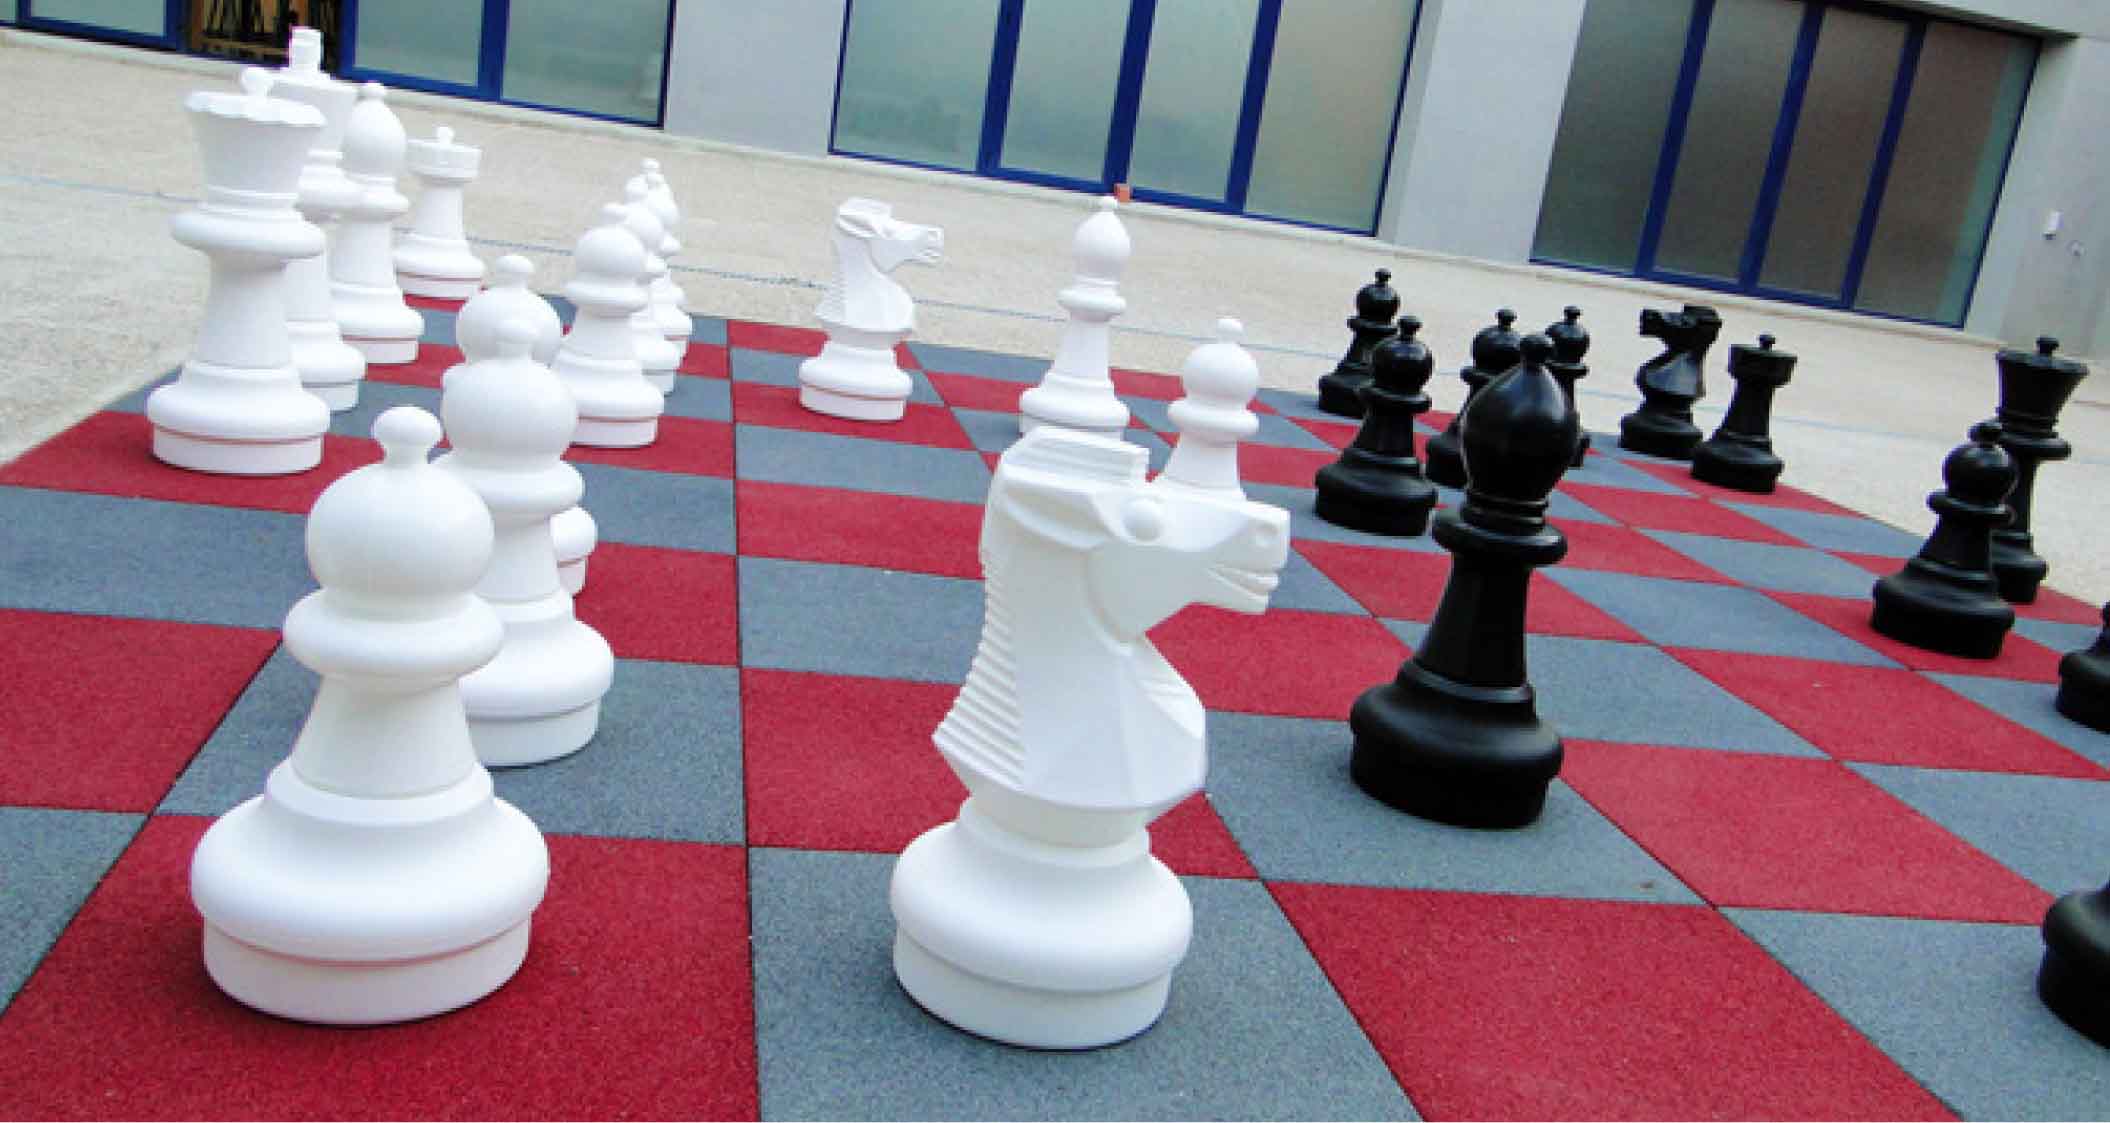 04 juegos inclusivos pvjl 36 ajedrez gigante